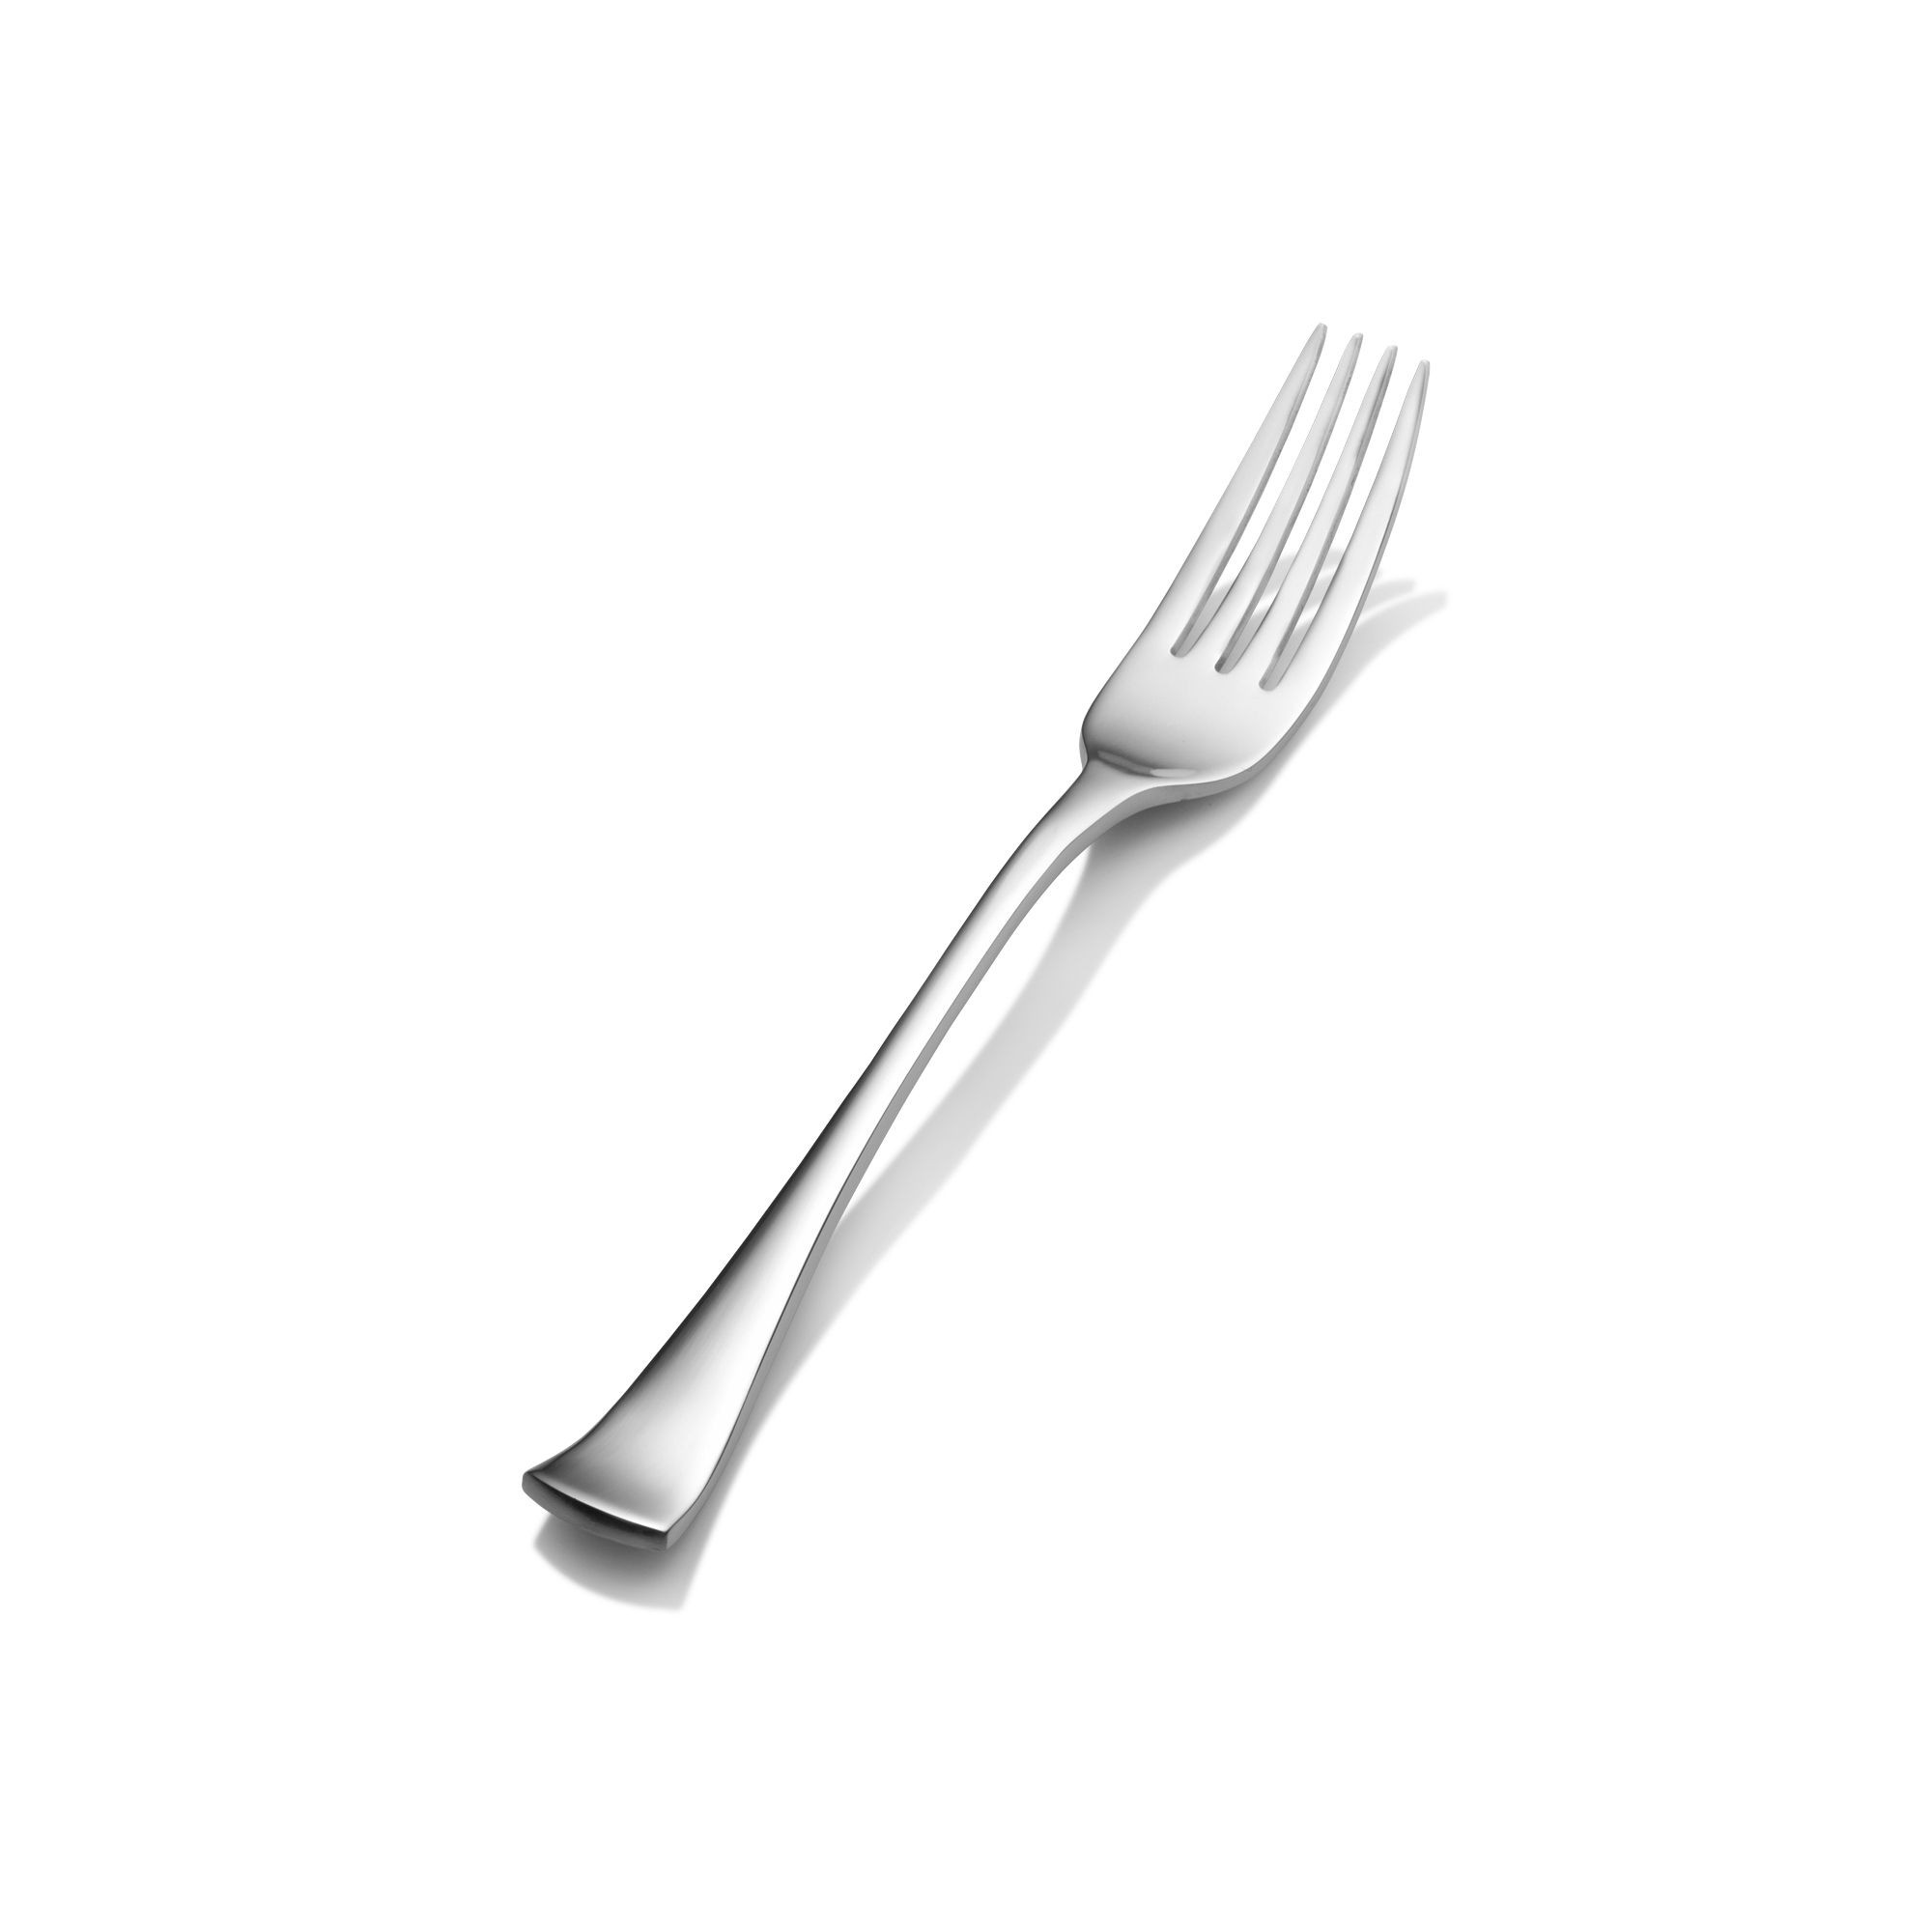 Bon Chef S3205 Aspen 18/8 Stainless Steel Regular Dinner Fork